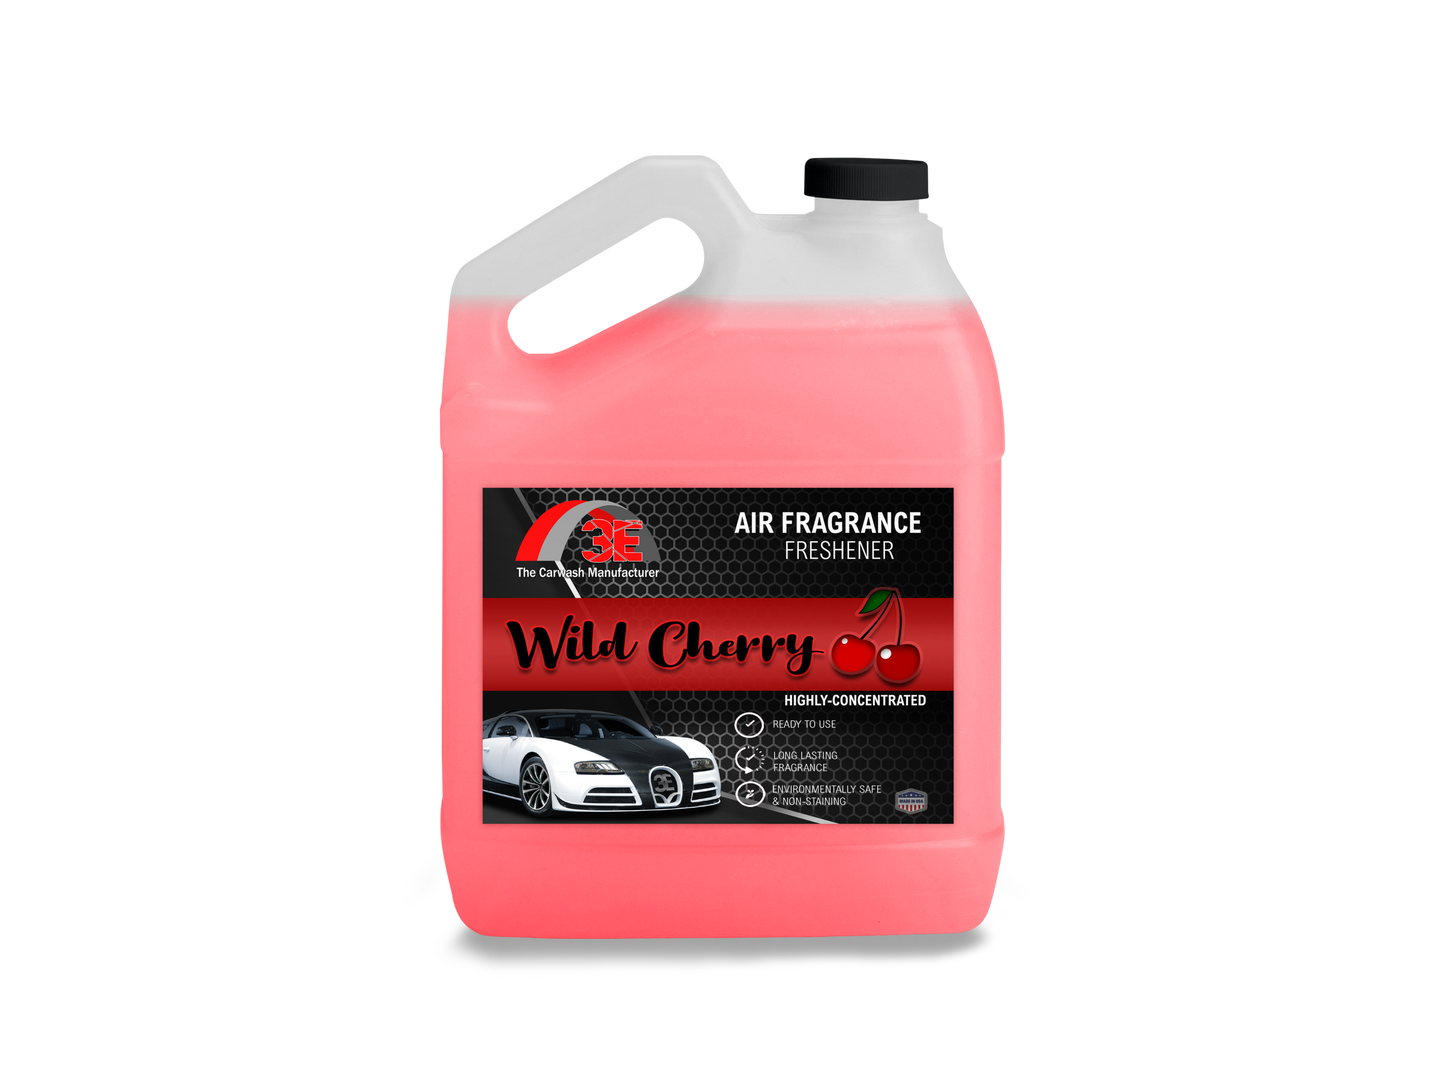 Wild Cherry Air Freshener